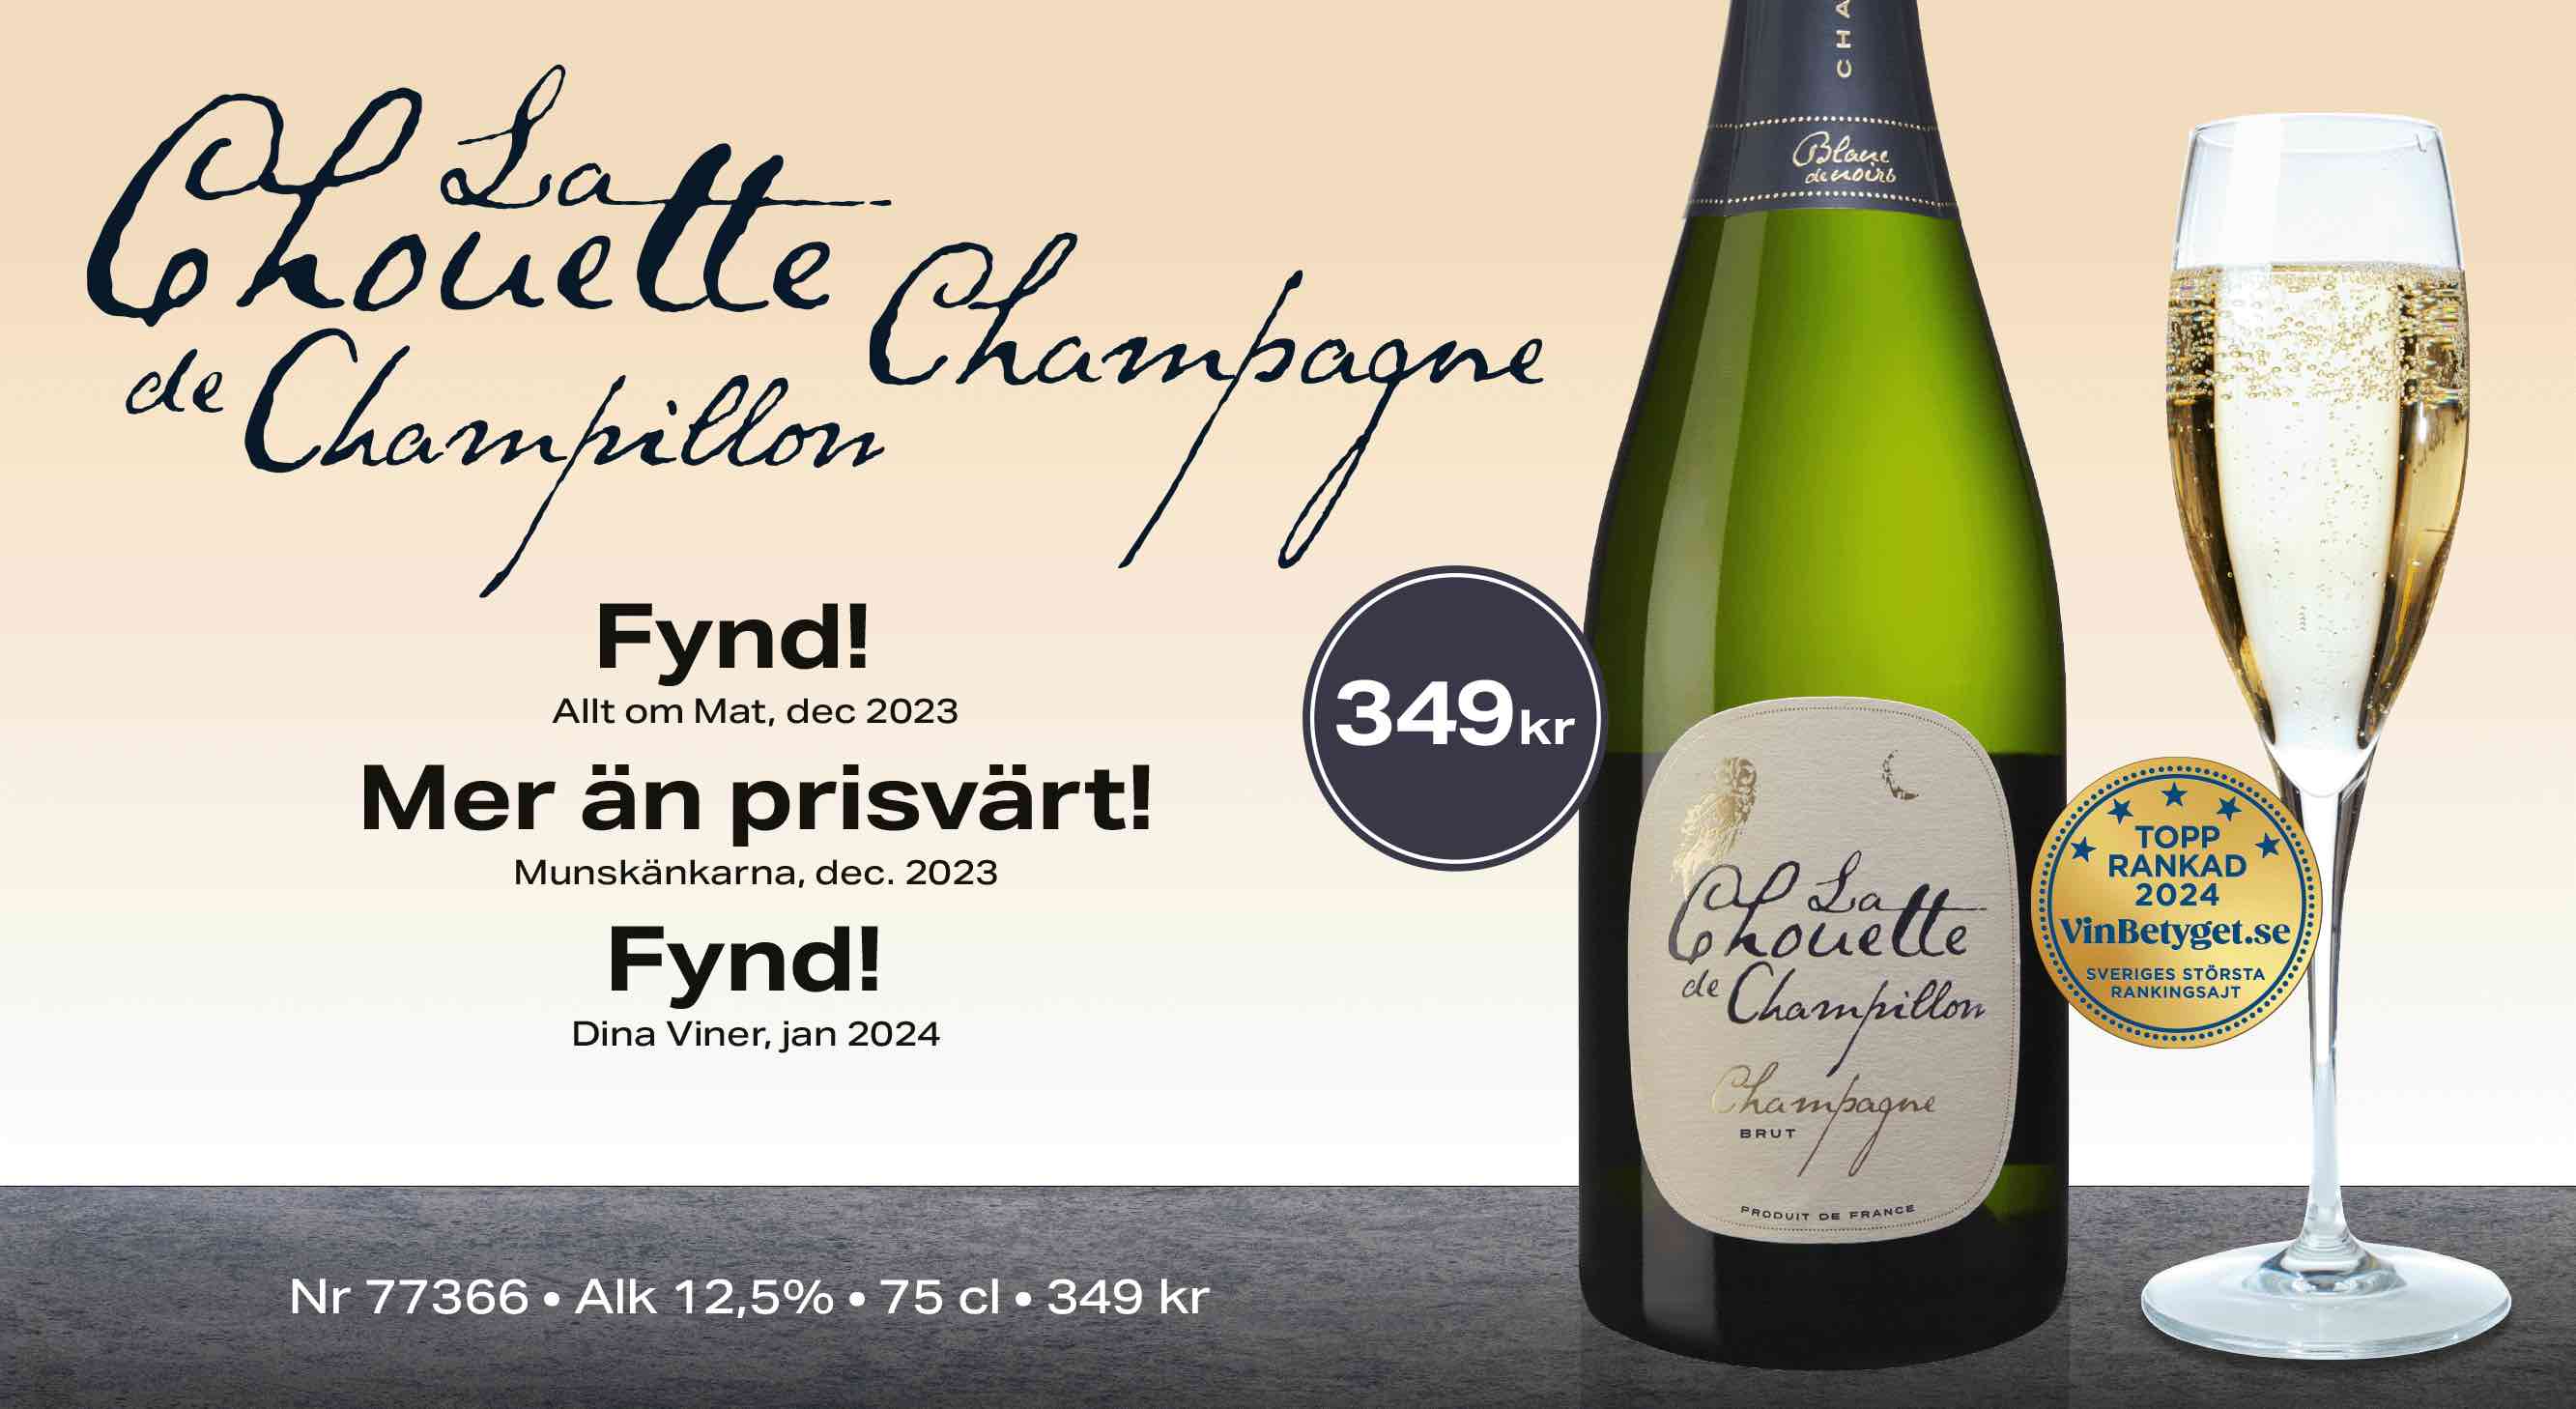 Champagne La Chouette 349 kr 